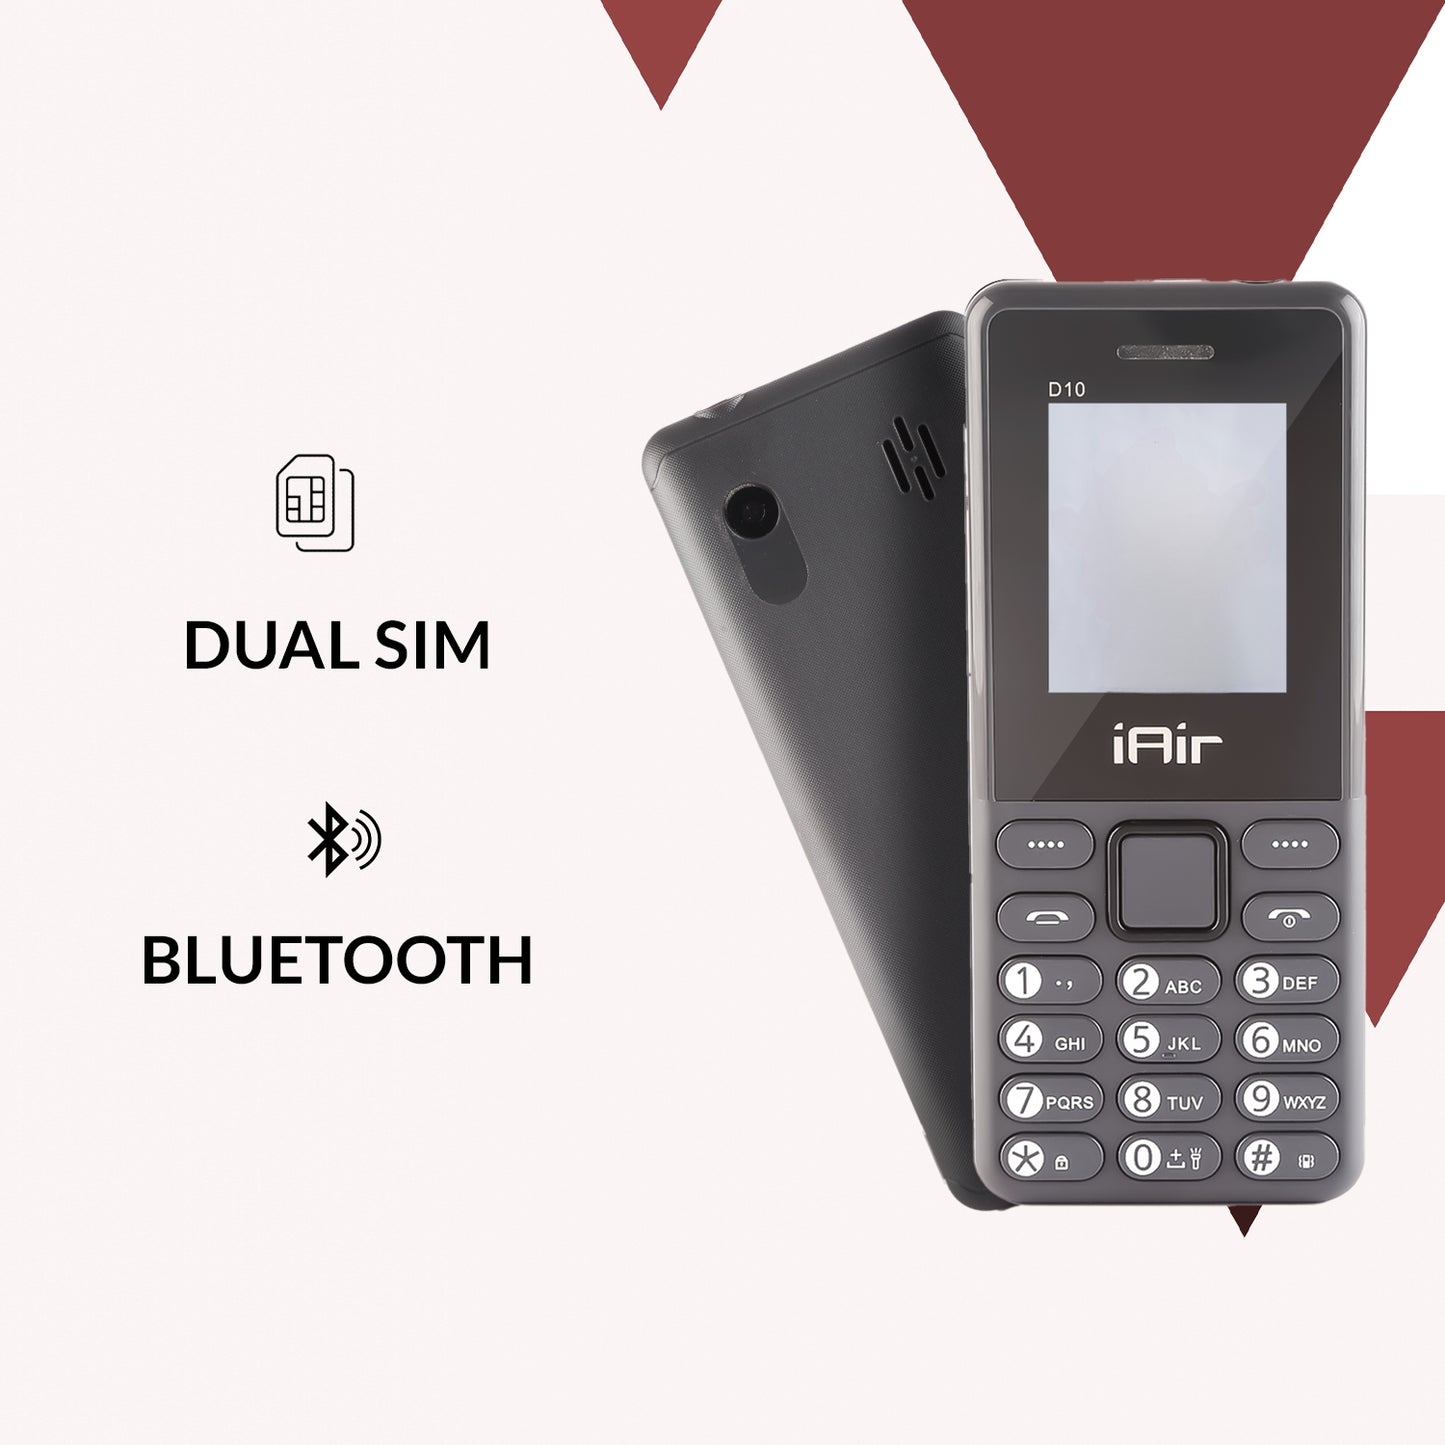 IAIR D10 Mini Dual Sim Keypad Phone | 1800 mAH Battery & Big 1.88 Inch Display | Big Torch Light | Wireless FM & Rear Camera | Auto Call Recording | Dual Sim Support | 32 MB Ram & Storage